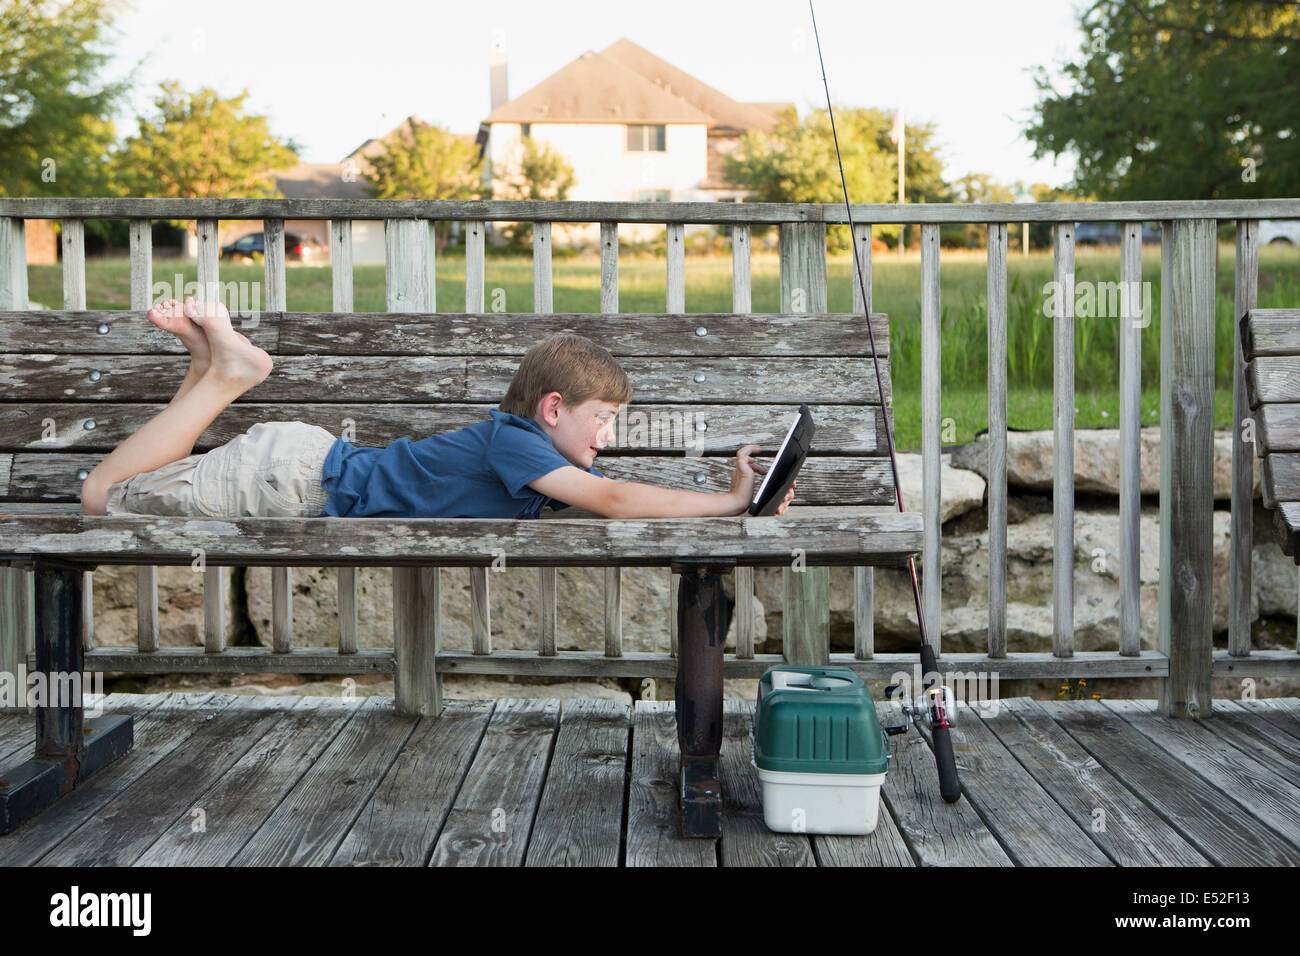 Ein kleiner Junge im Freien auf einer Bank mit einem digitalen Tablet liegend. Ausrüstung für die Fischerei. Stockfoto